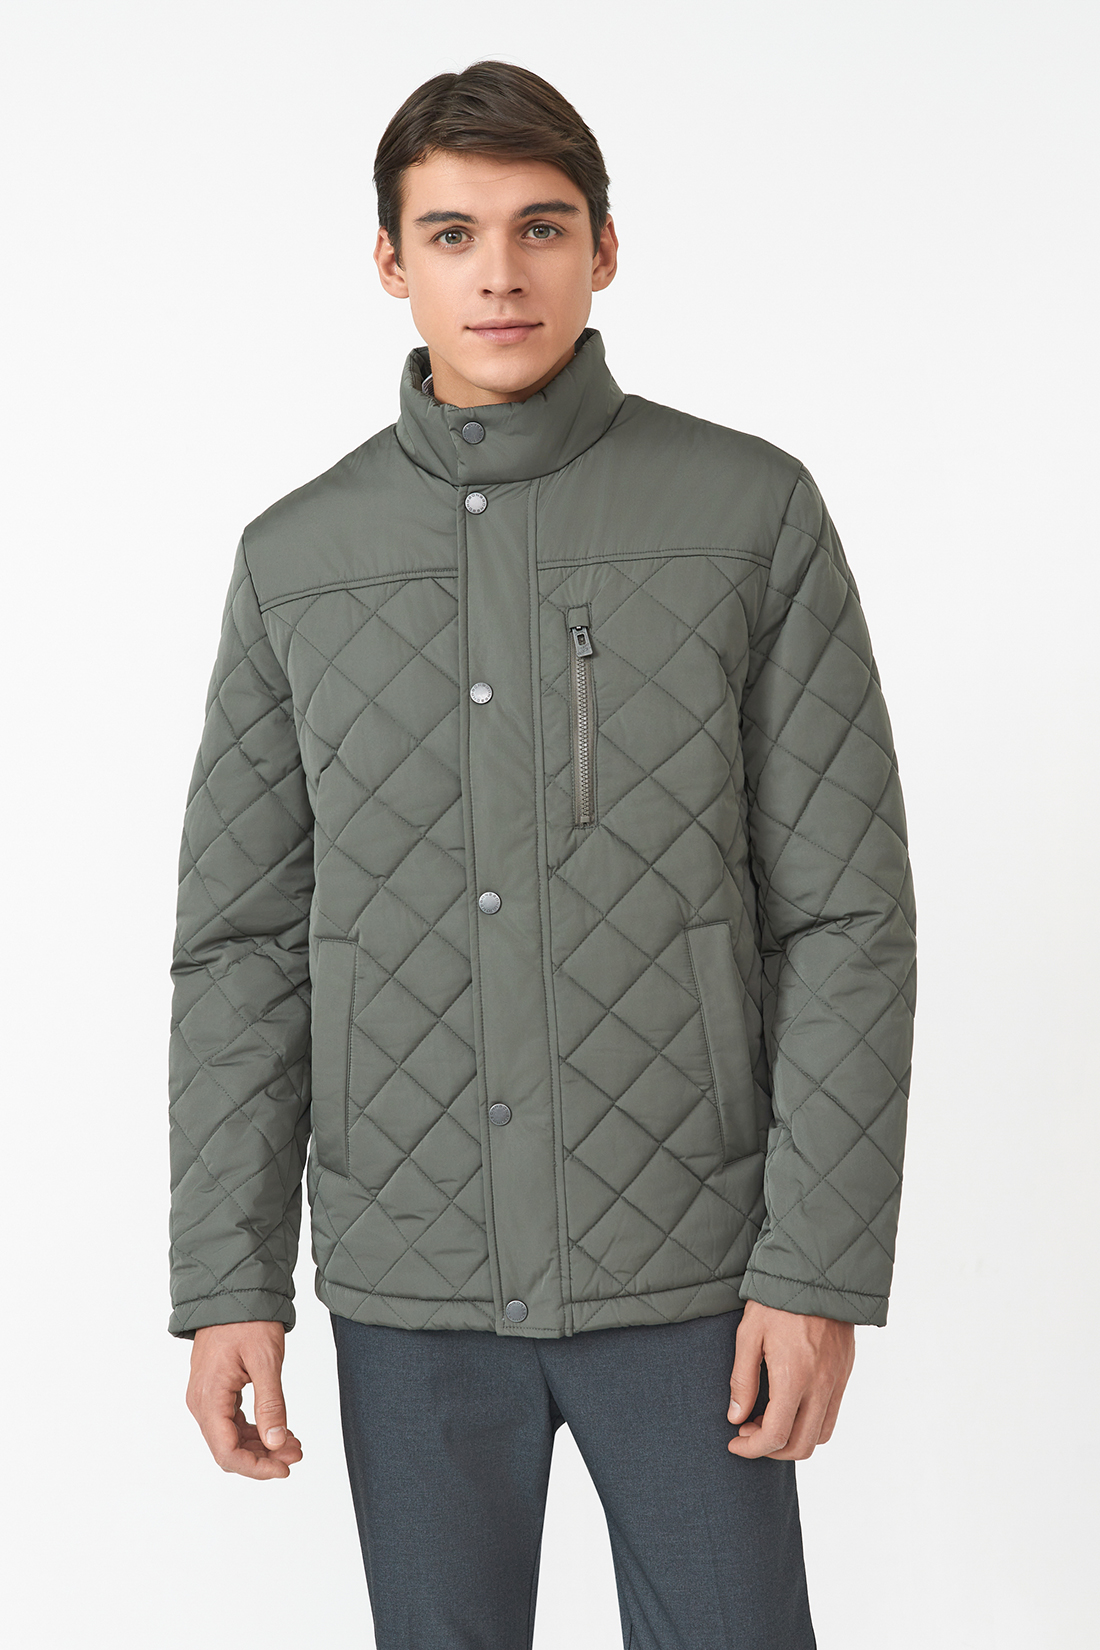 Зимняя куртка мужская Baon B5323506 зеленая M